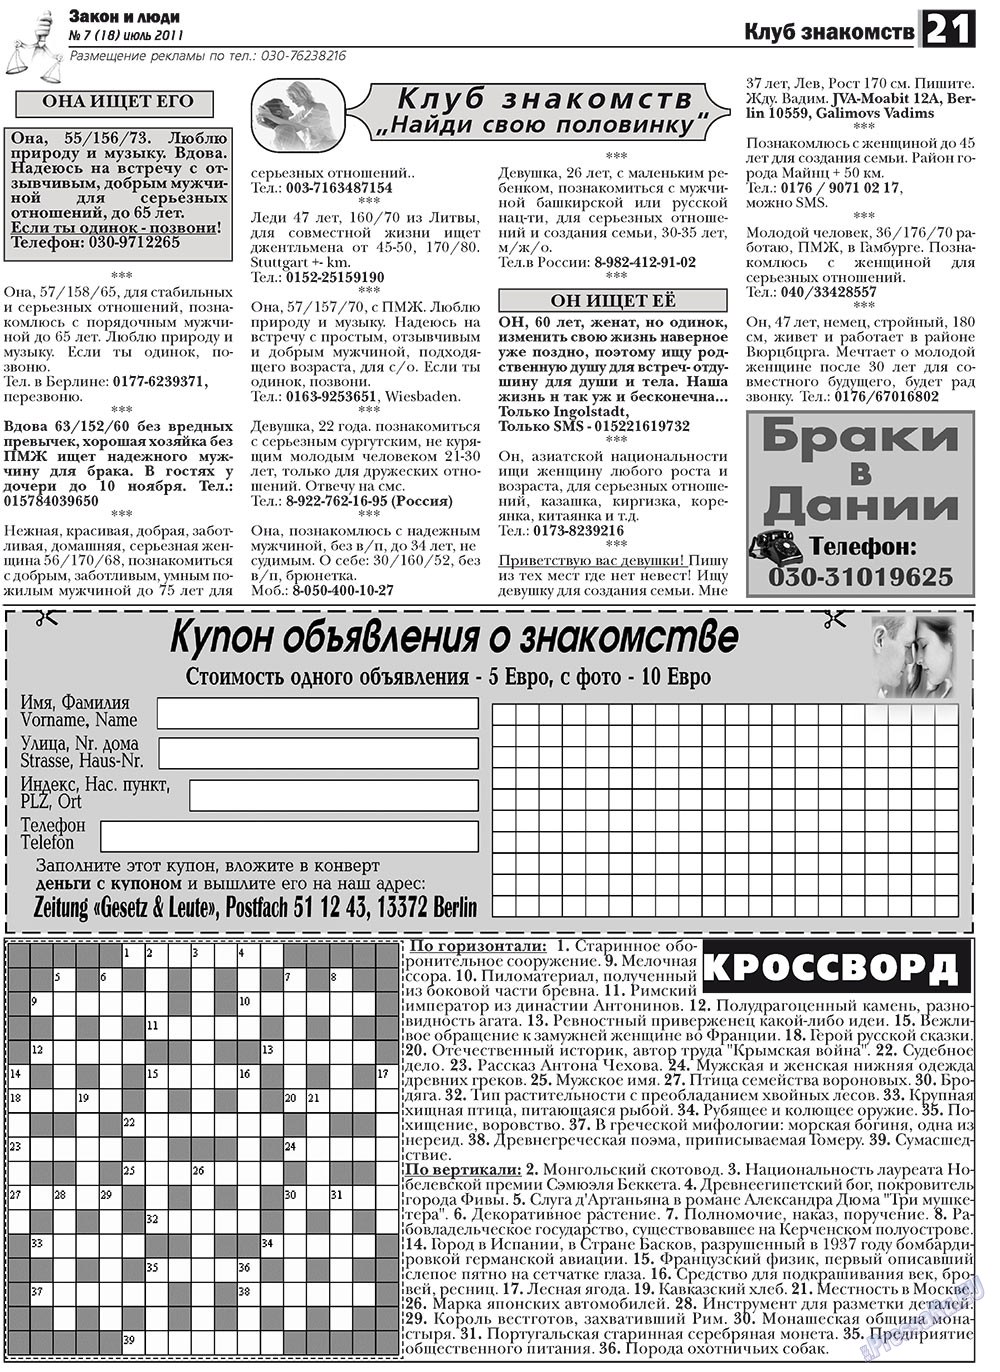 Закон и люди, газета. 2011 №7 стр.21